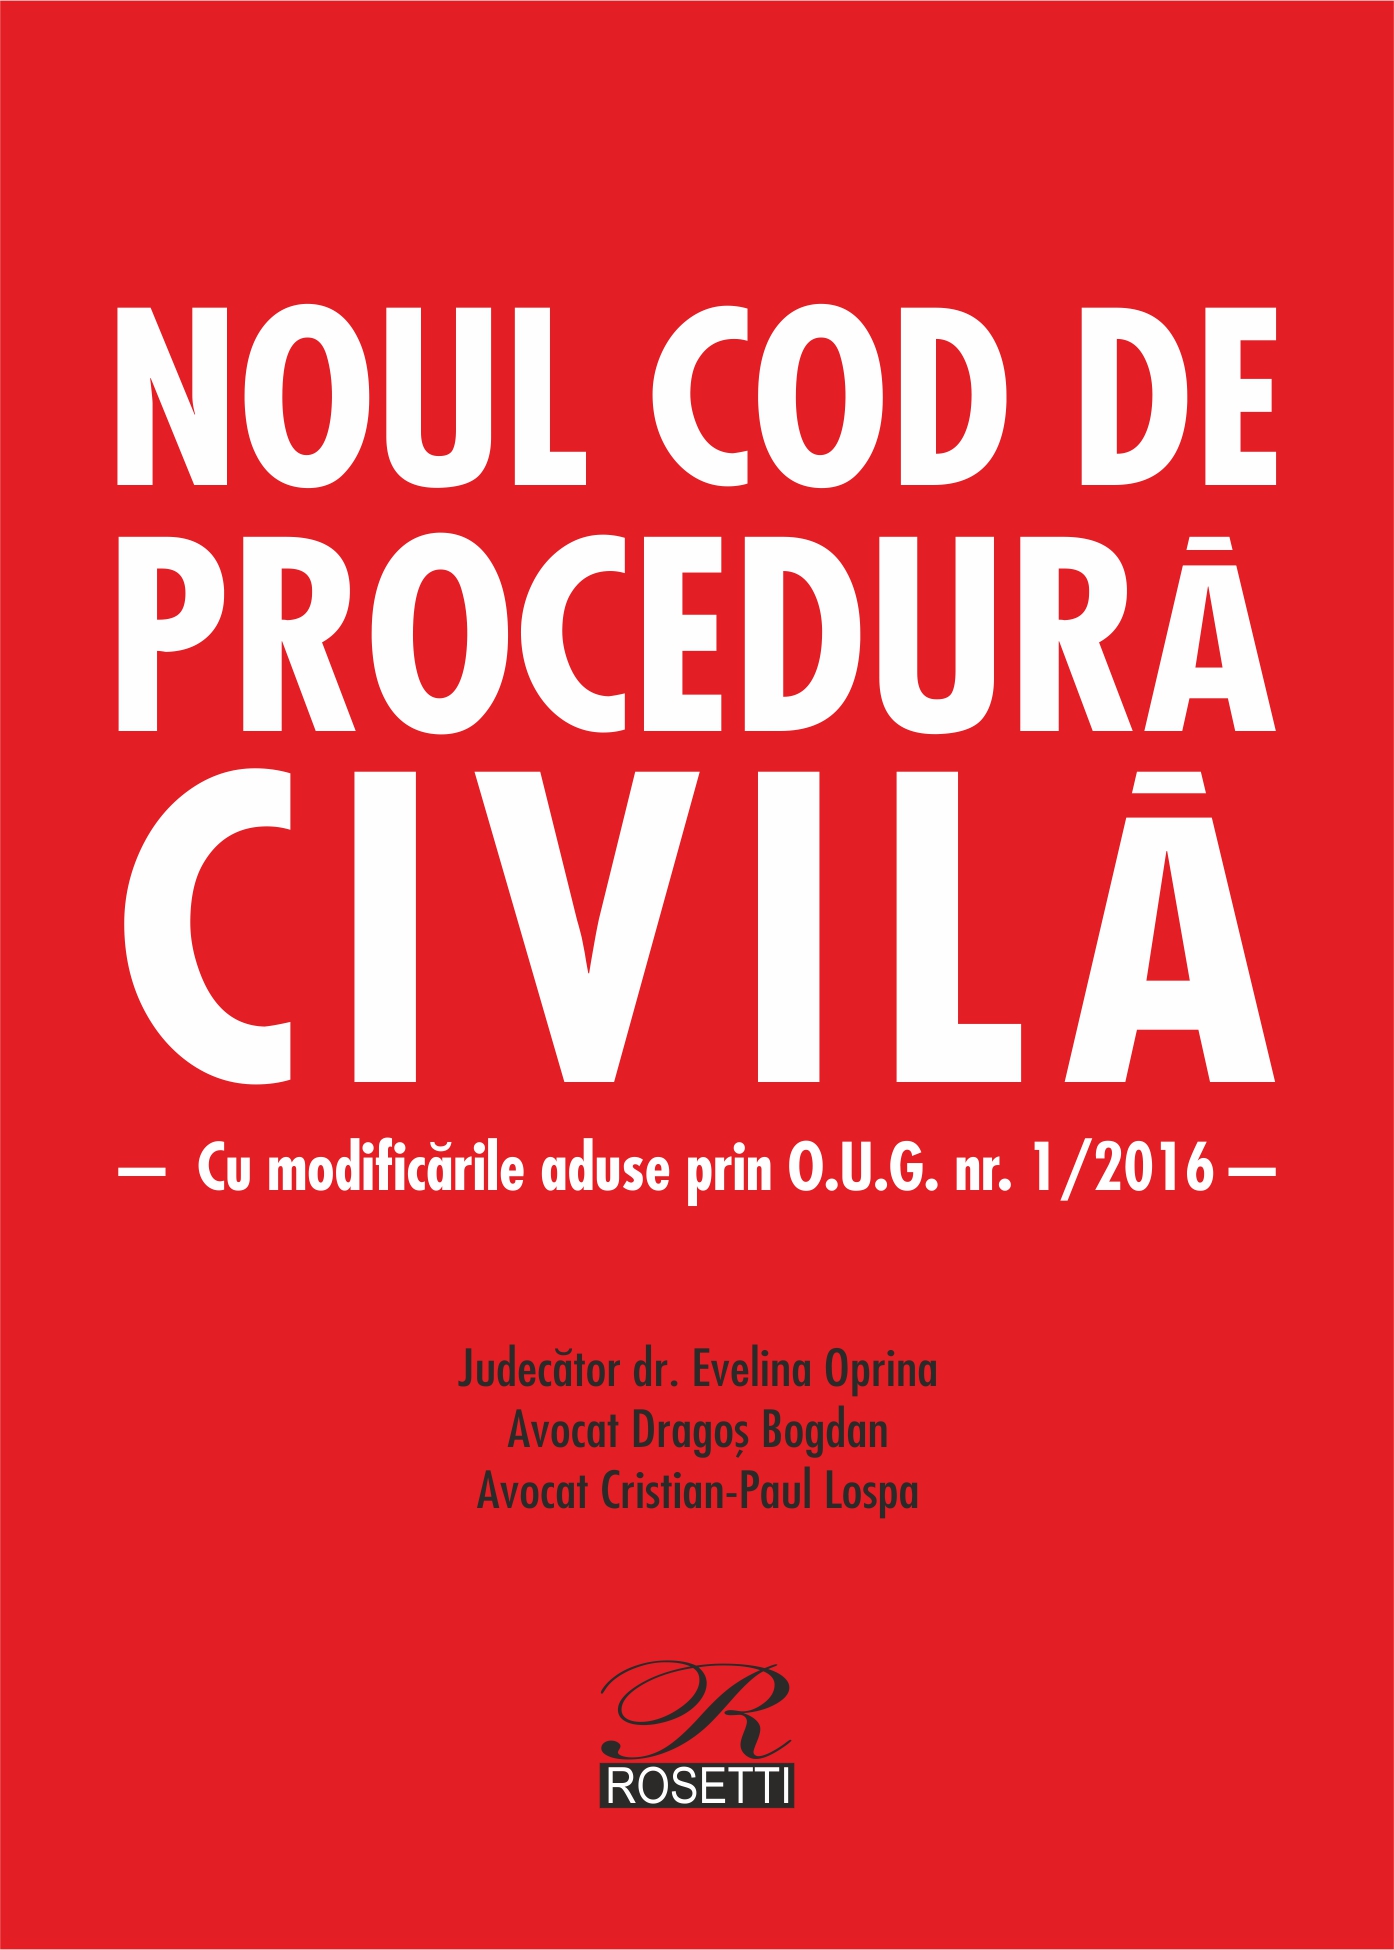 Noul Cod de procedura civila - Editie 2016